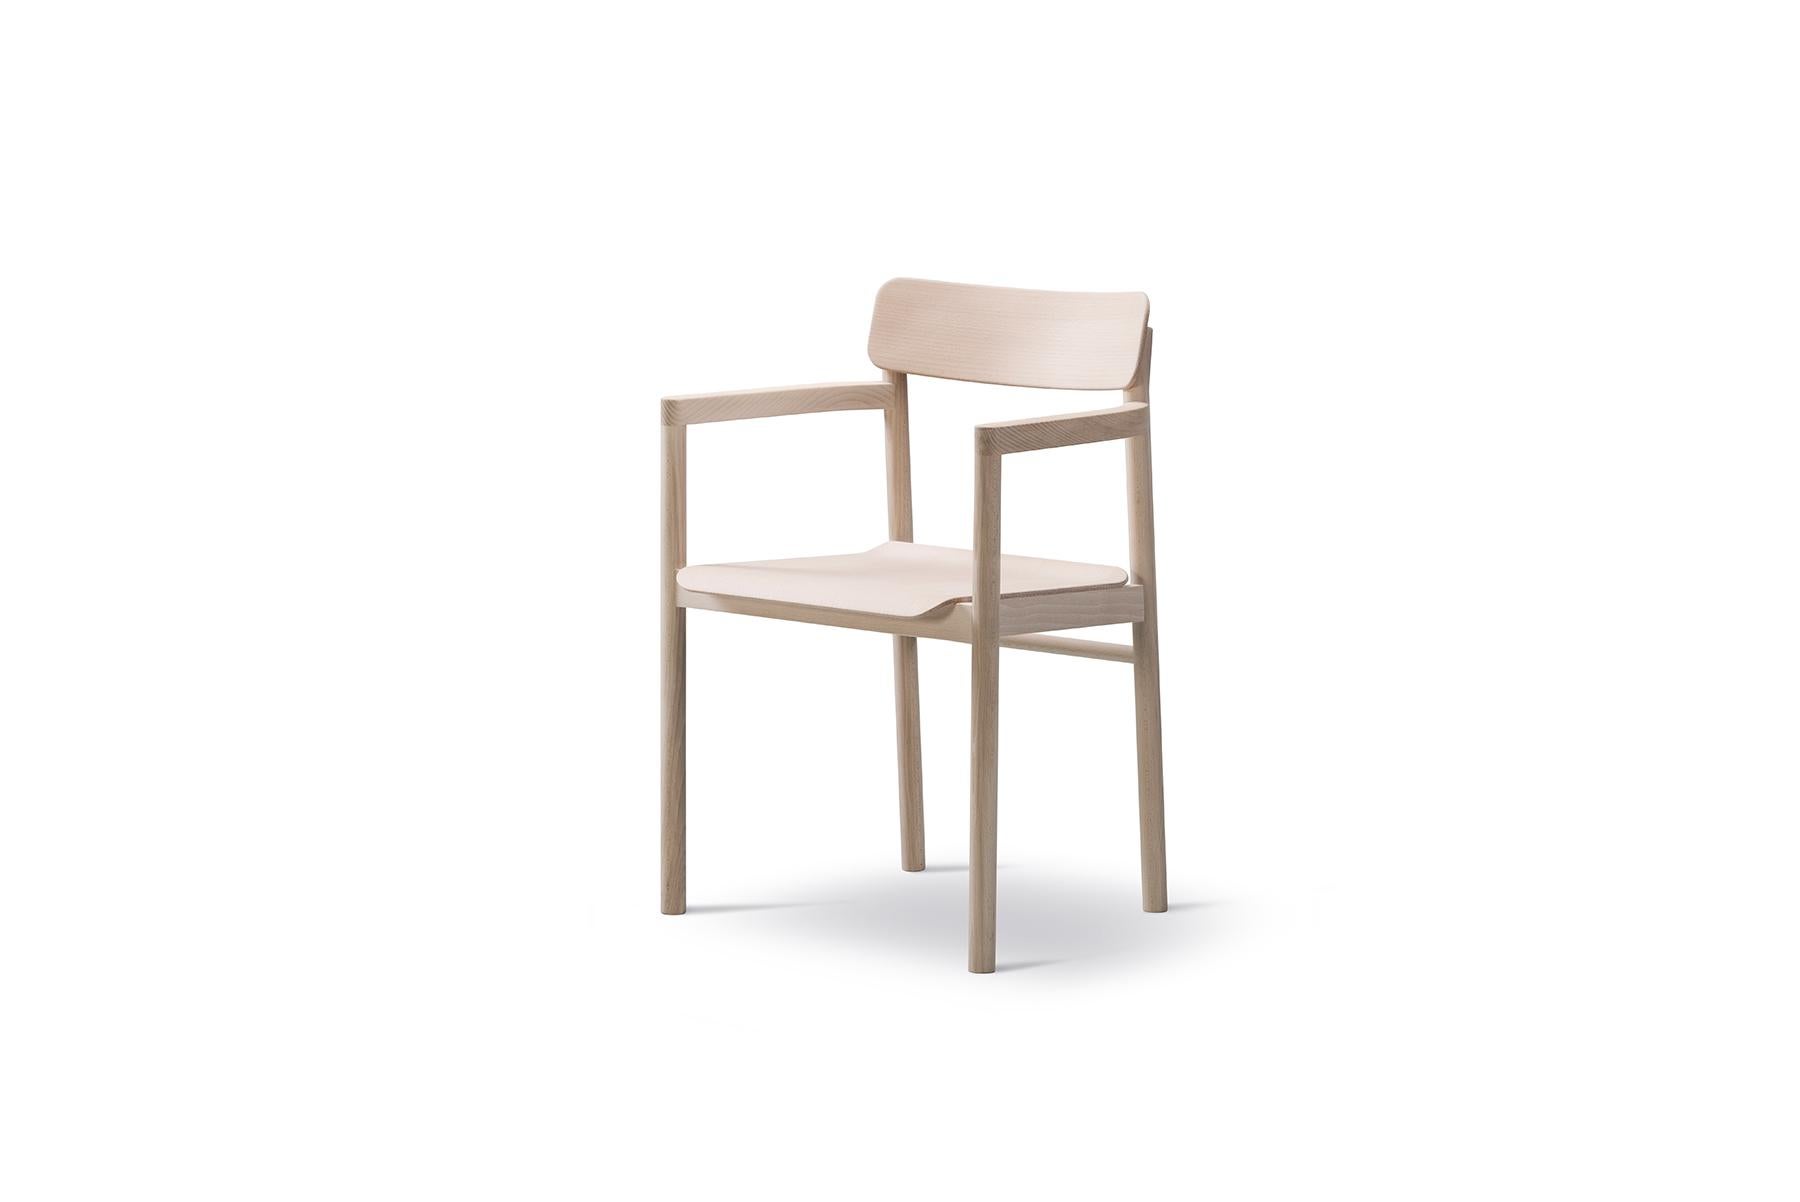 Avec sa position verticale et sa structure en bois massif, le fauteuil Cecilie Manz Post incarne les principes de simplicité qui animent la designer Cecilie Manz. Construite avec un minimum d'espace pour les accoudoirs et un siège confortablement